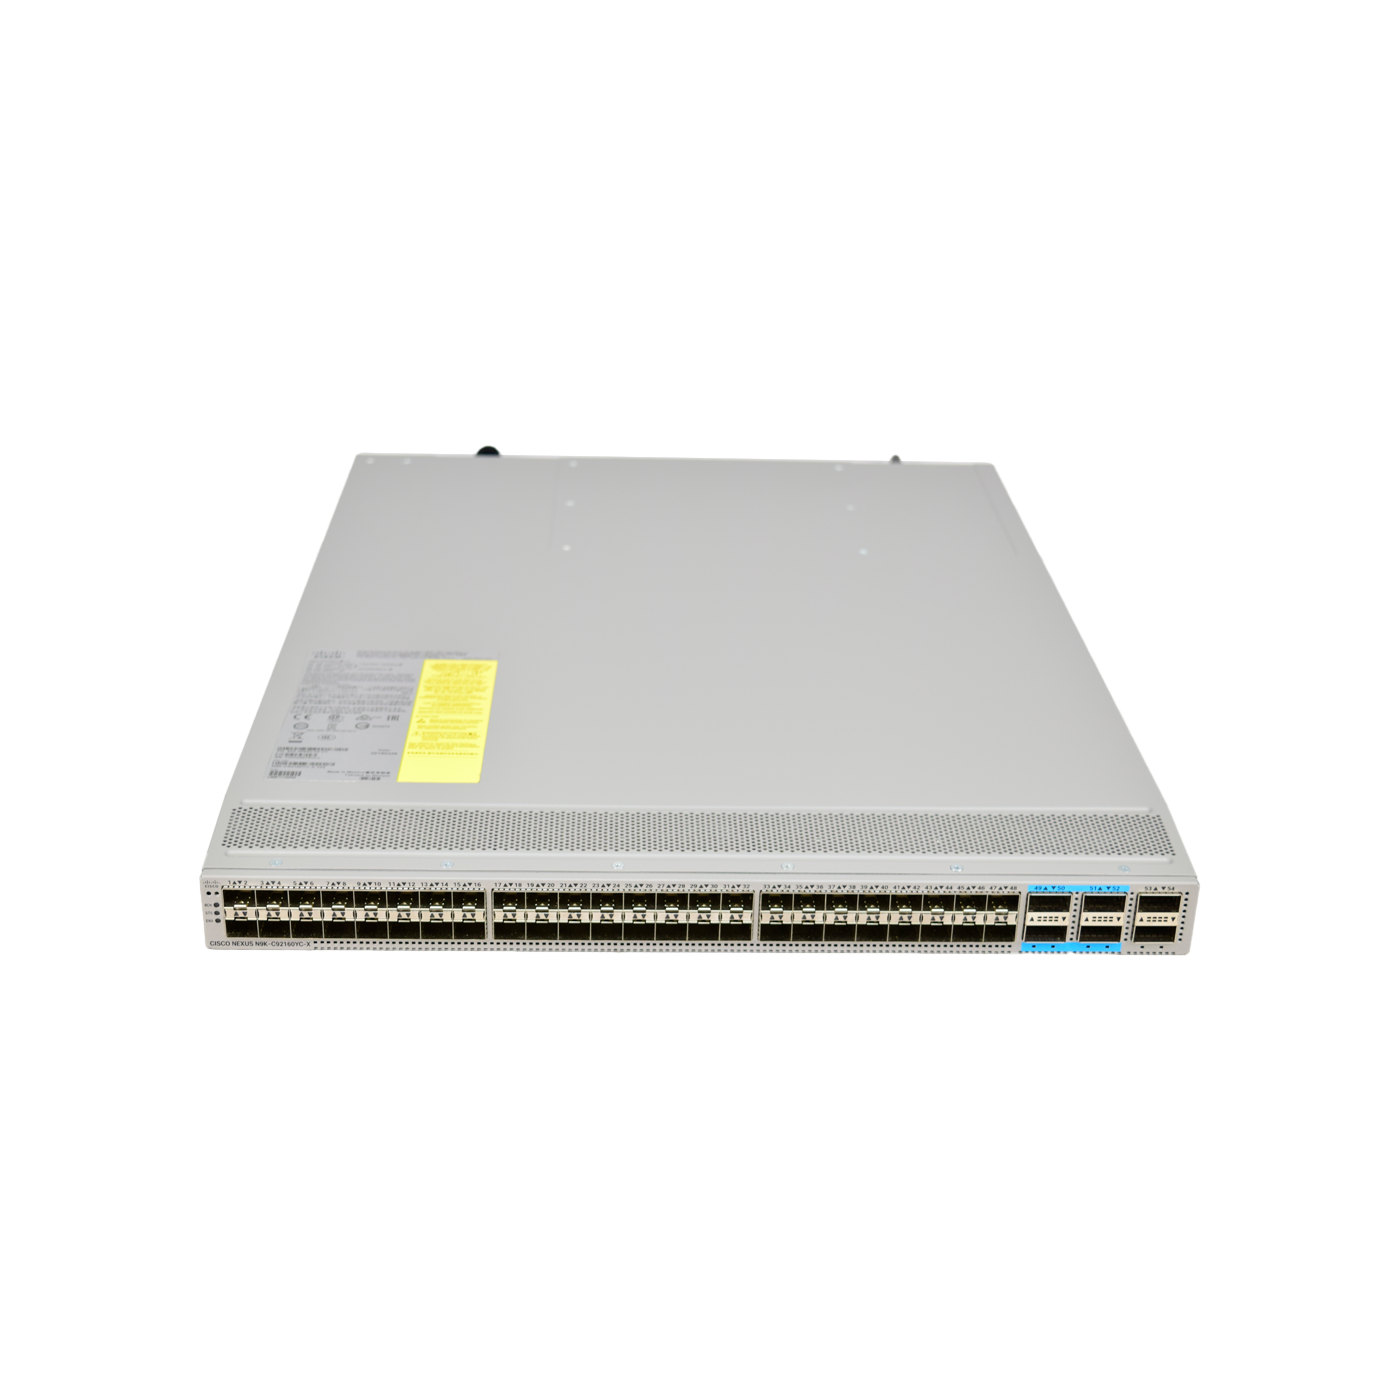 Cisco N9K-C92160YC-X 48x 1/10G/25G SFP+ 6x 40G QSFP or 4x 100G QSFP28 Switch